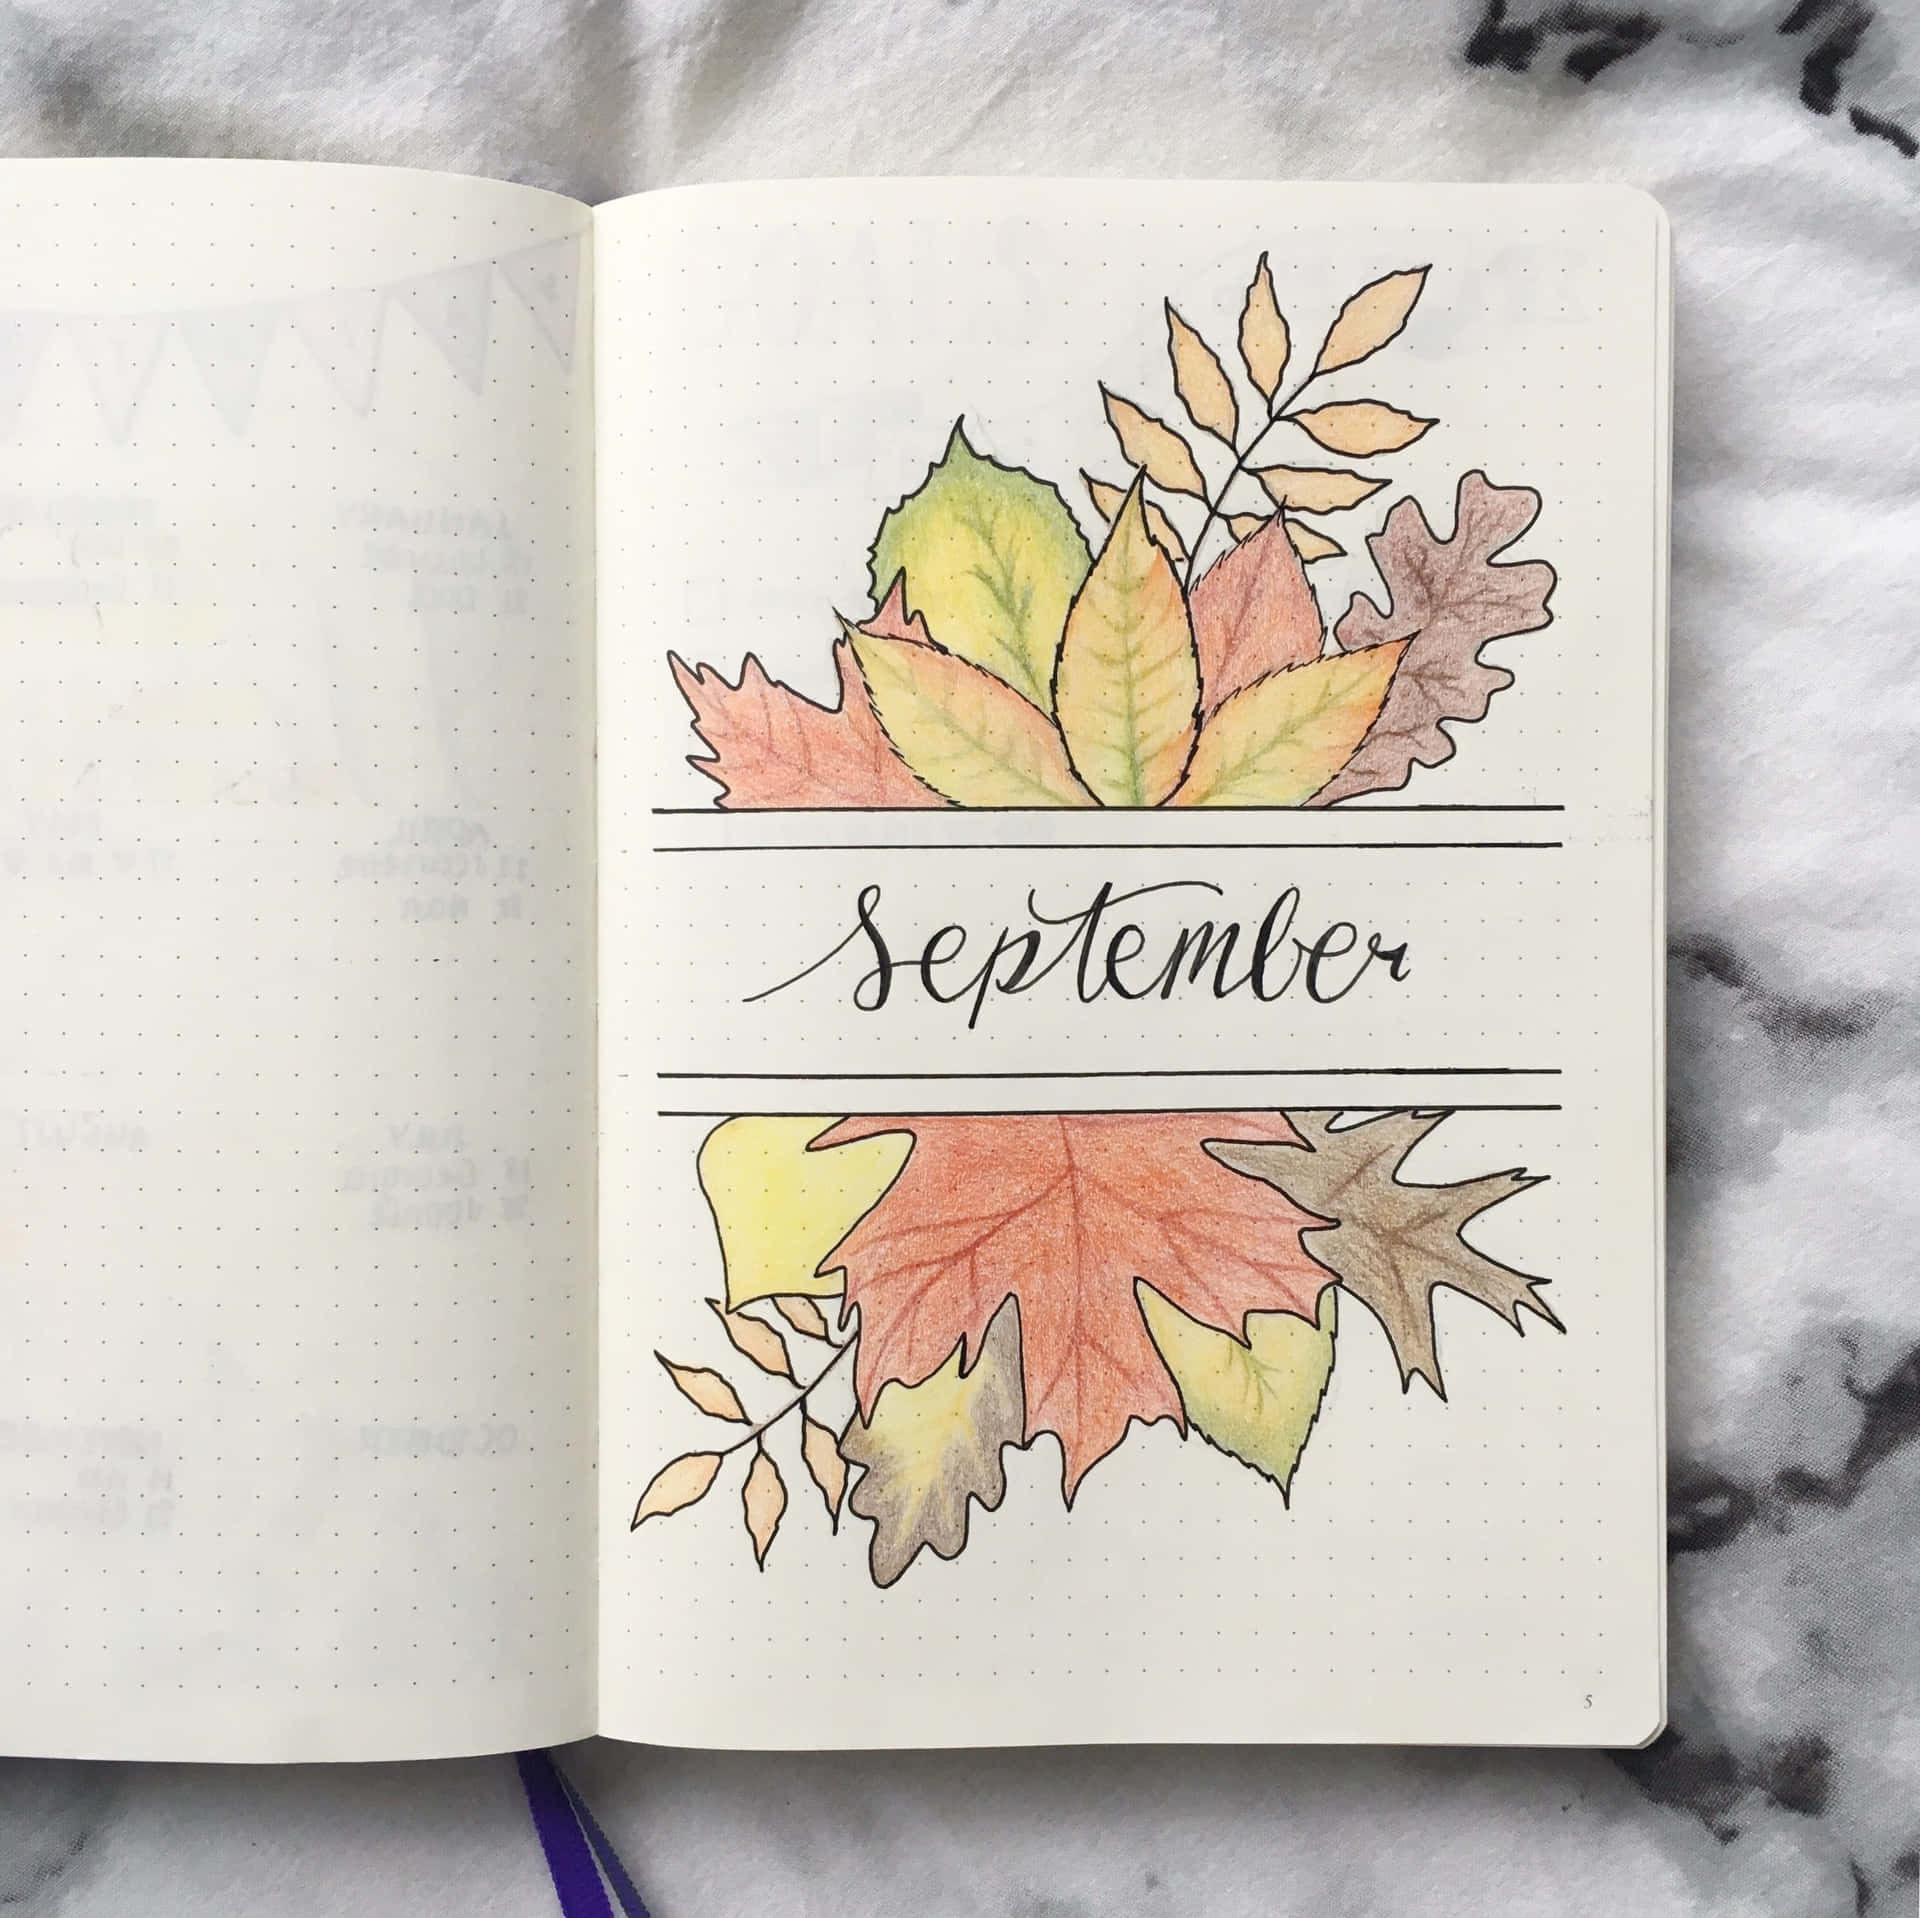 Enjoy the Colorful Splendor of the September Season